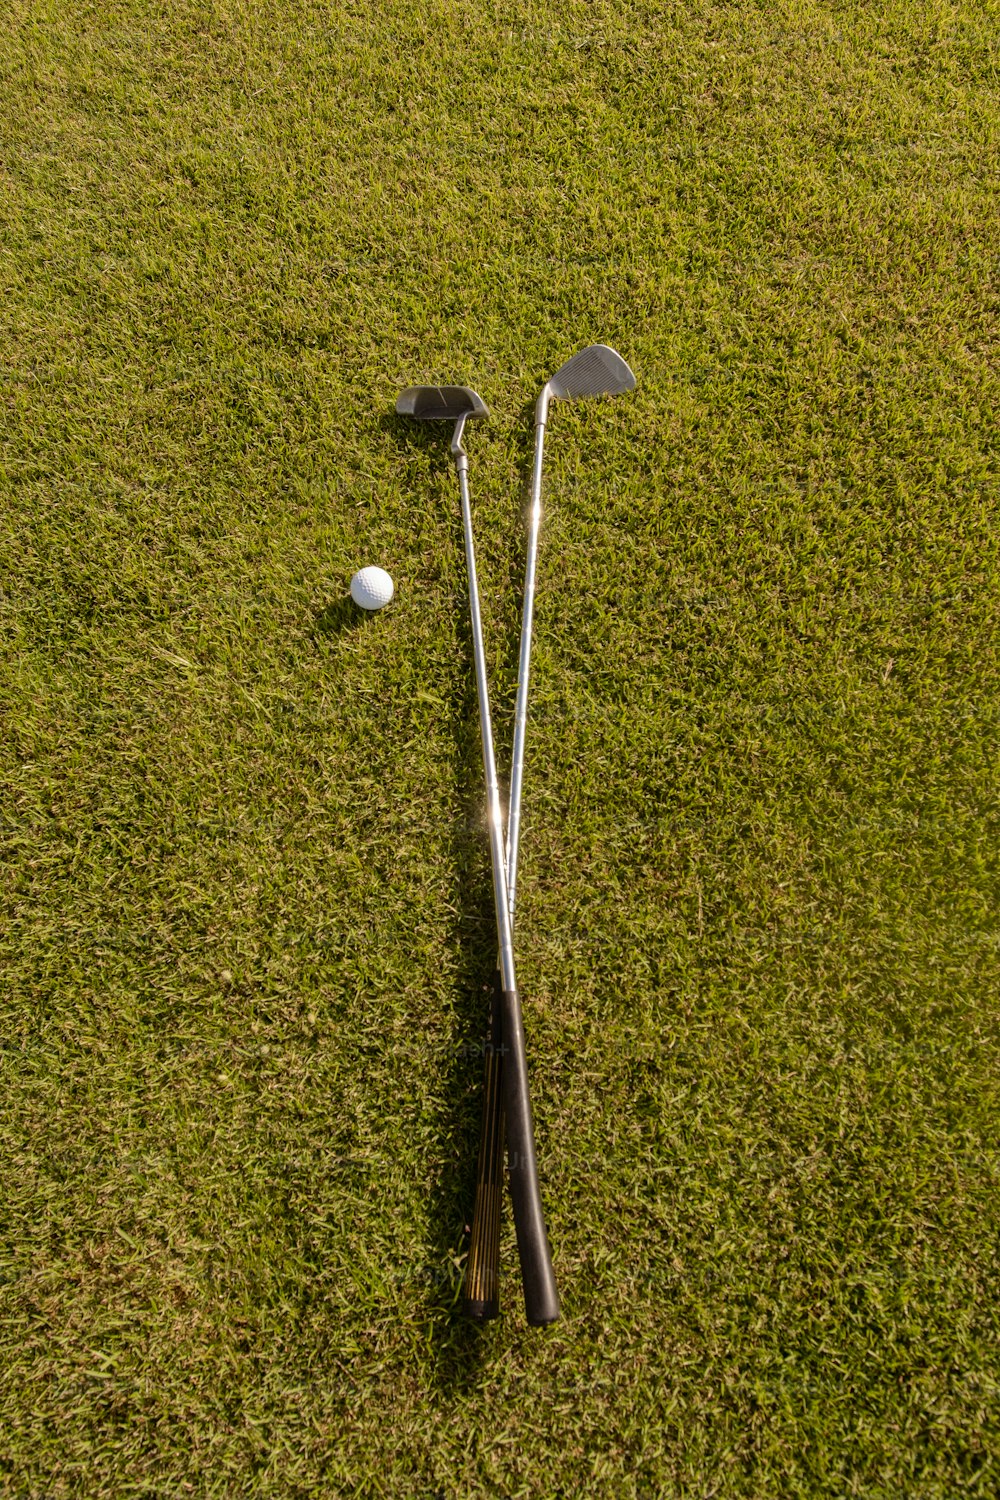 deux clubs de golf et une balle posée sur l’herbe